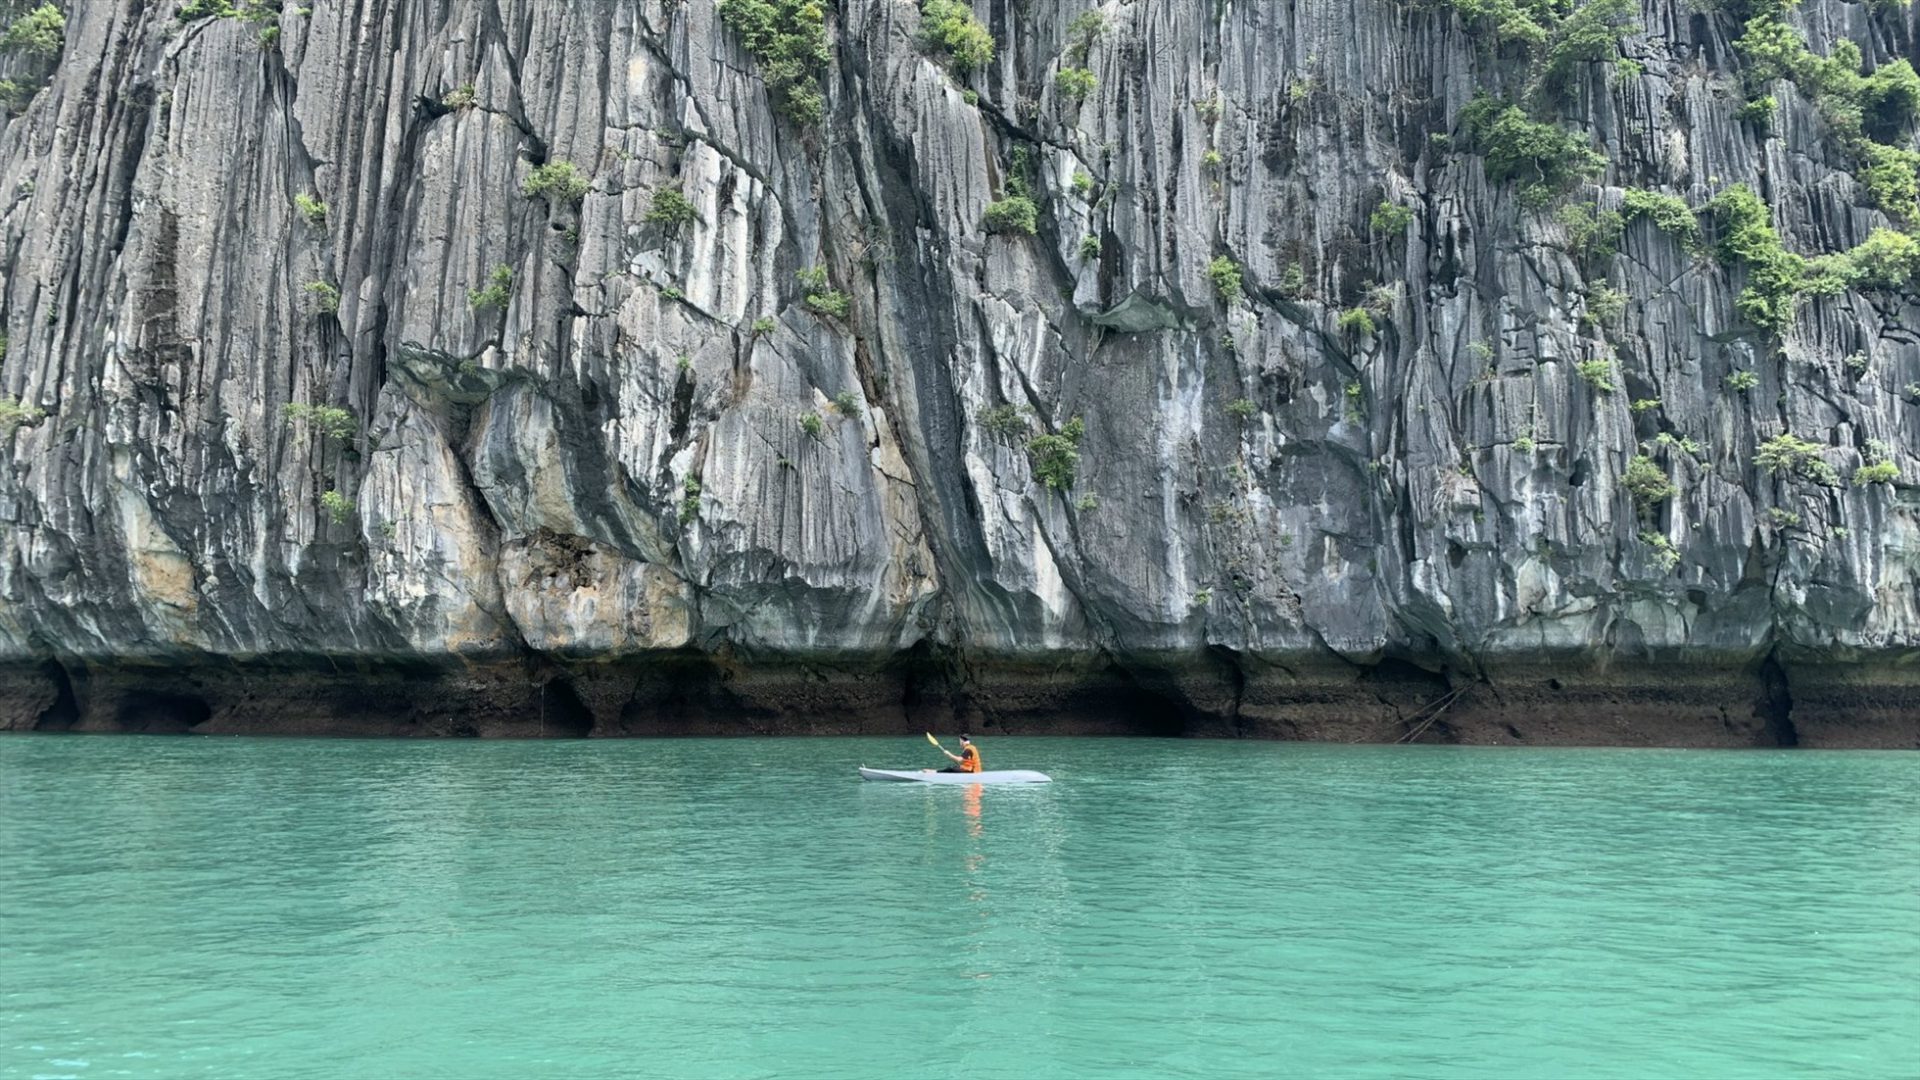 Chèo thuyền giữa những núi đá vôi khổng lồ là trải nghiệm yêu thích của khách du lịch tại vịnh Lan Hạ. Ảnh: Đức Anh